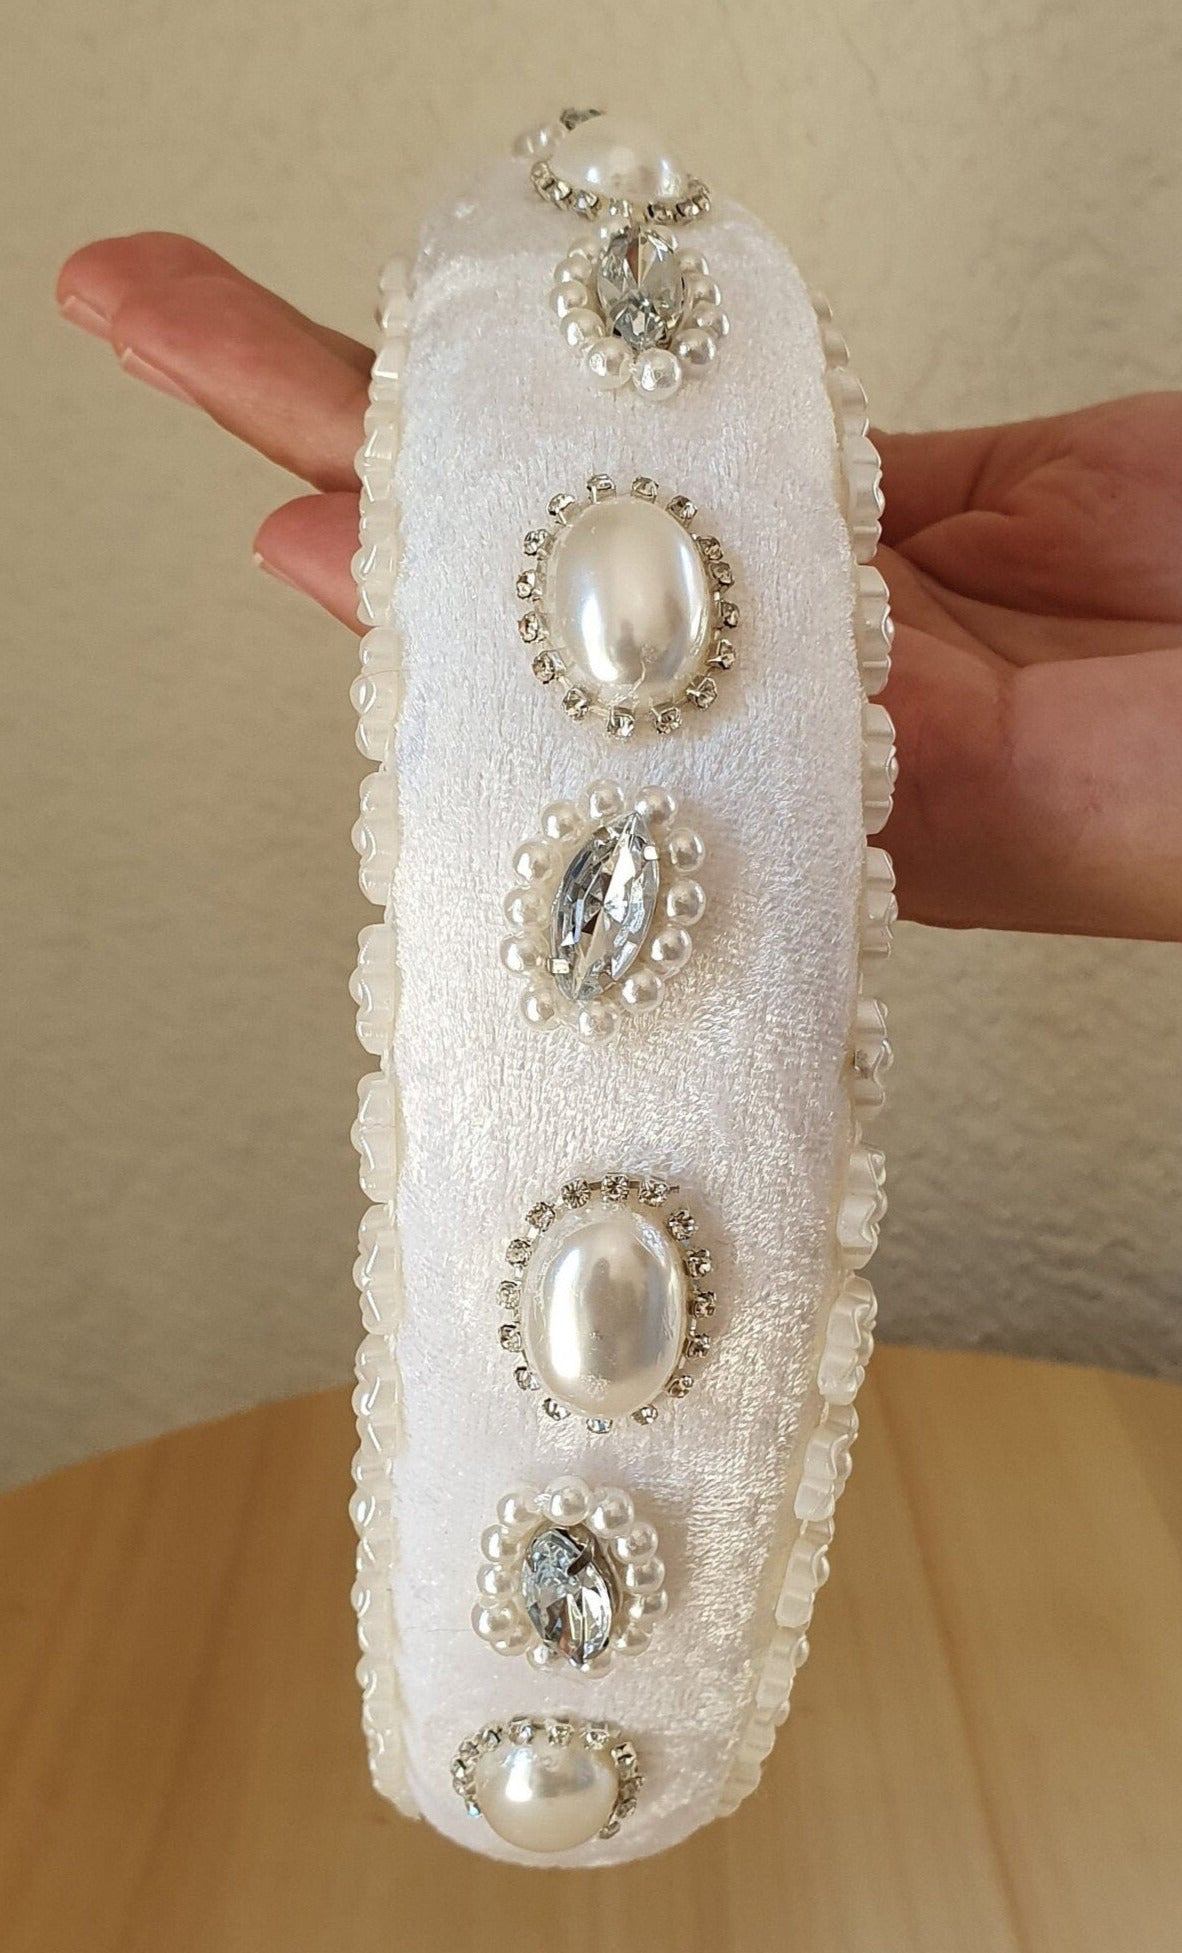 Handgemaakte fluwelen hoofdband met parels, elegante haaraccessoire voor bruiloften, bruiloft tiara, hoofddeksel, speciale gelegenheid